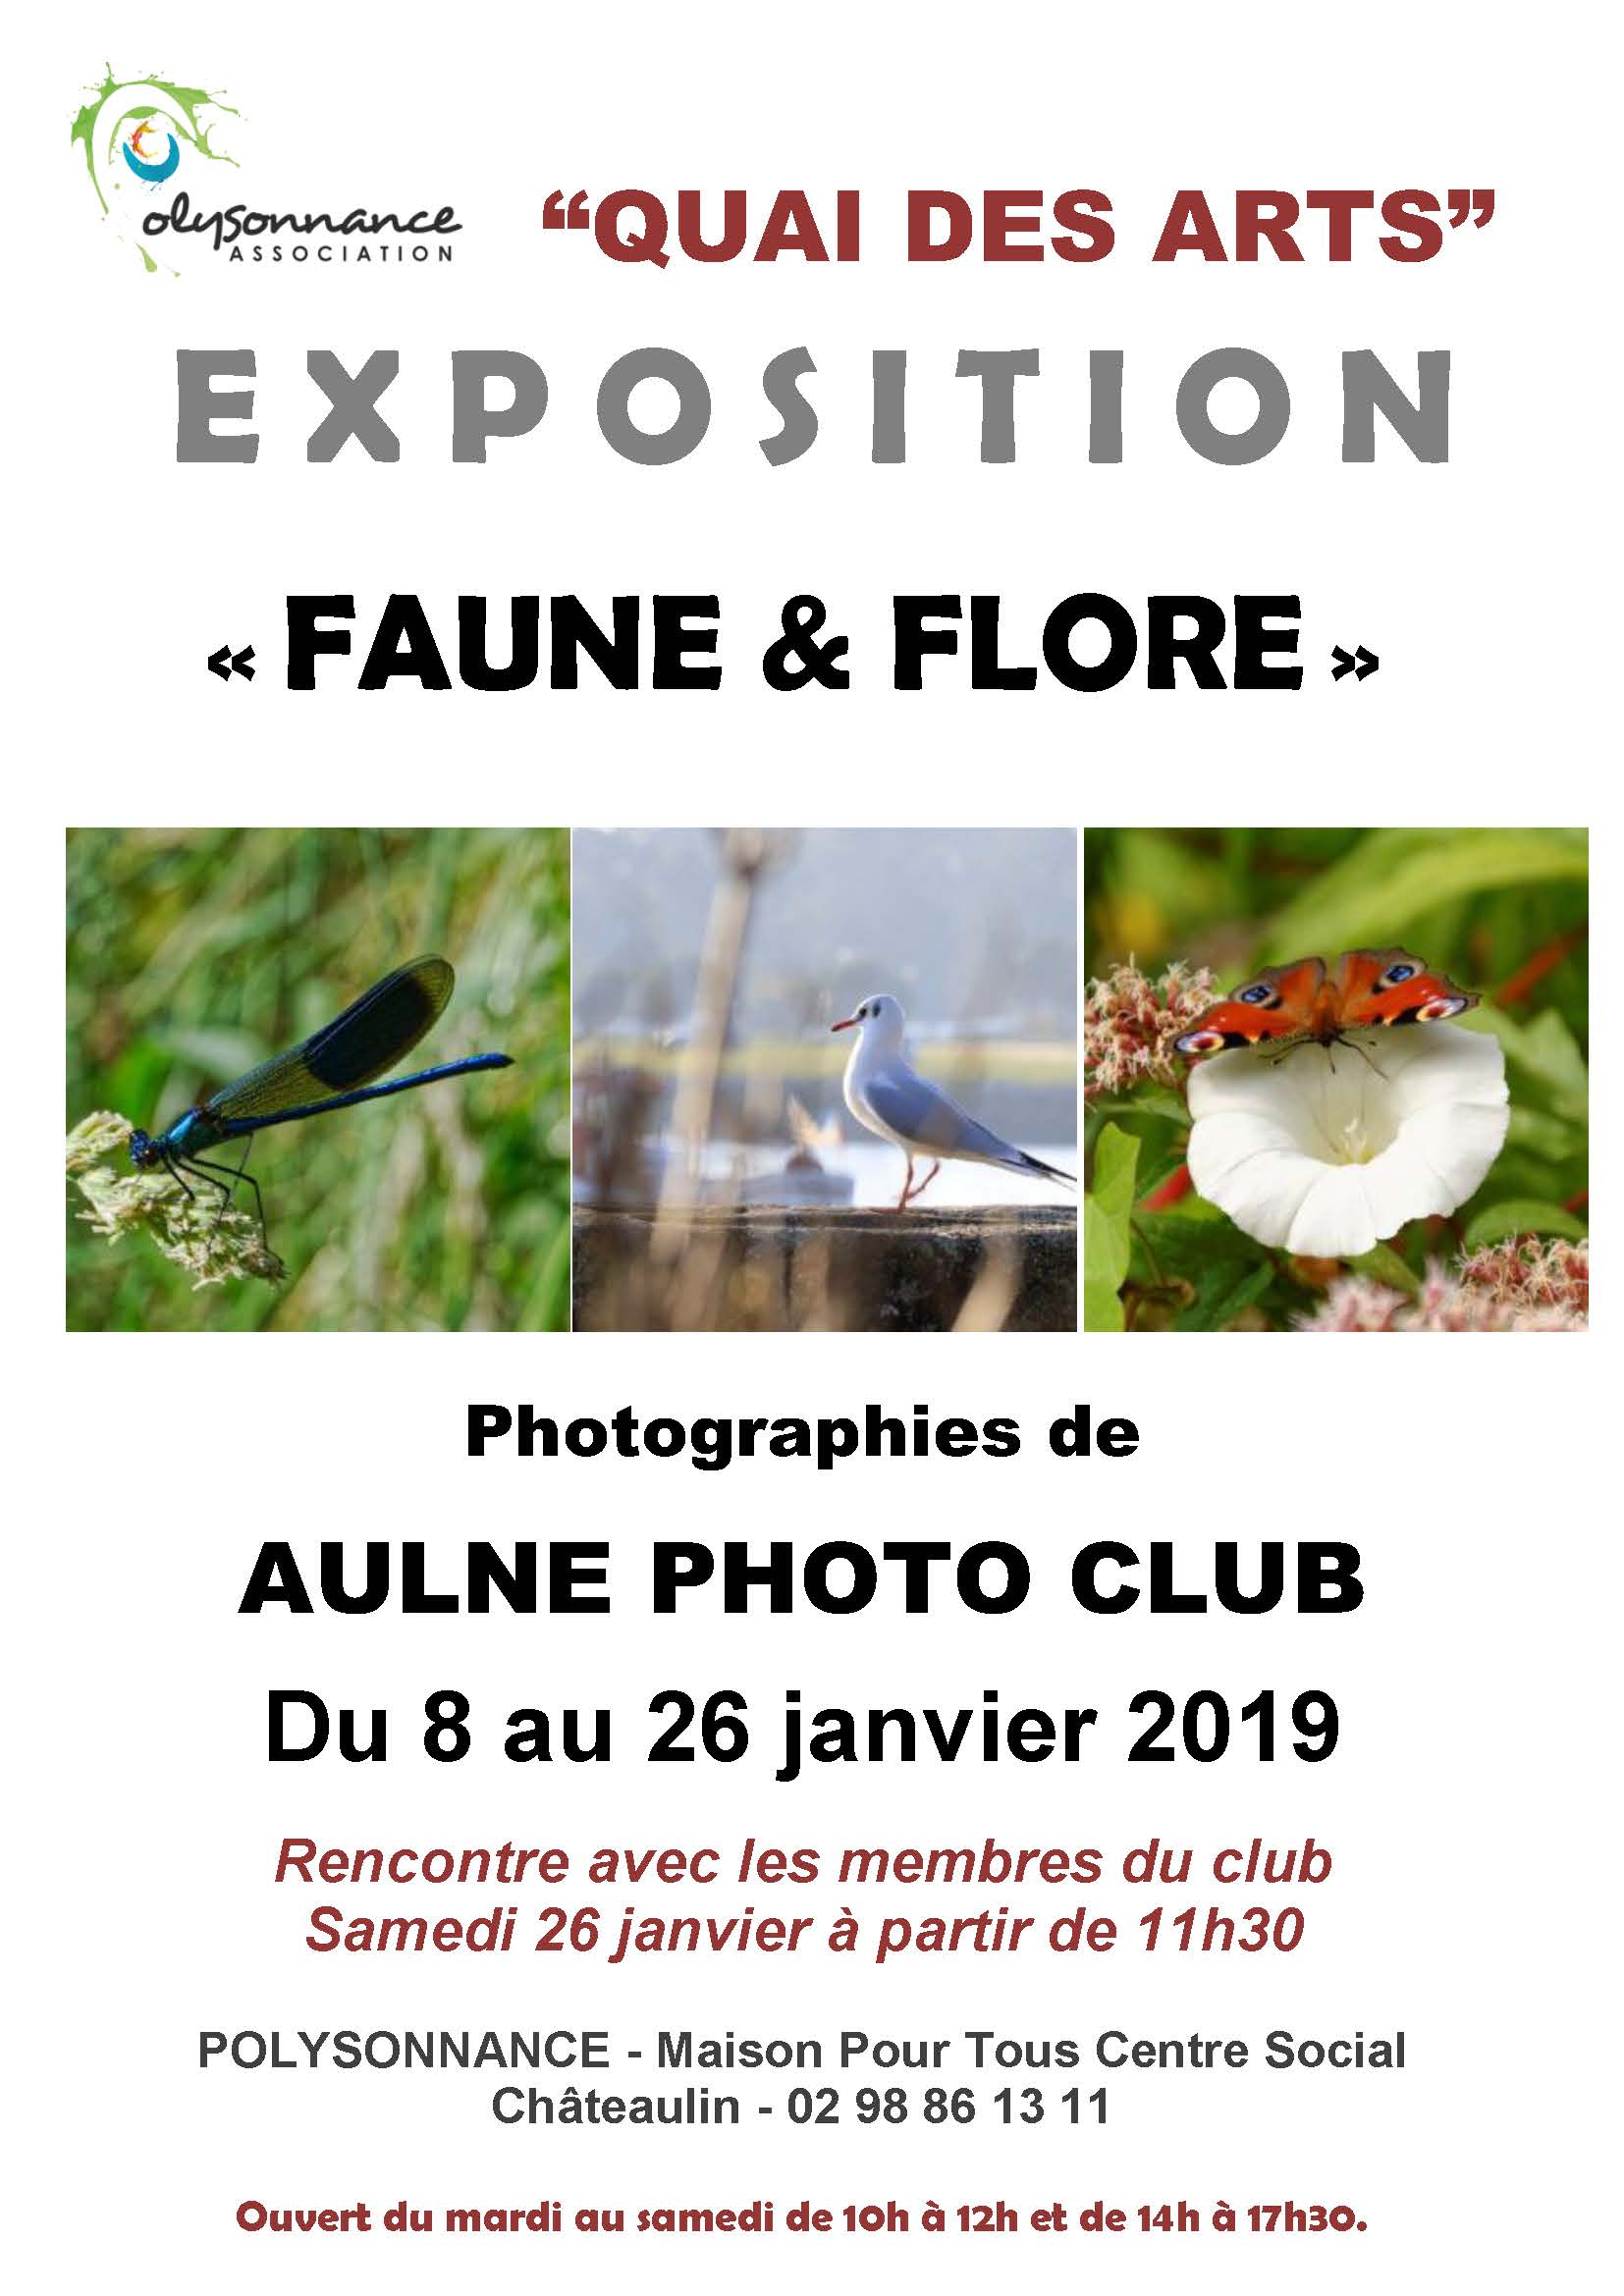 Exposition « FAUNE & FLORE » du 8 au 26 janvier 2019 à Polysonnance